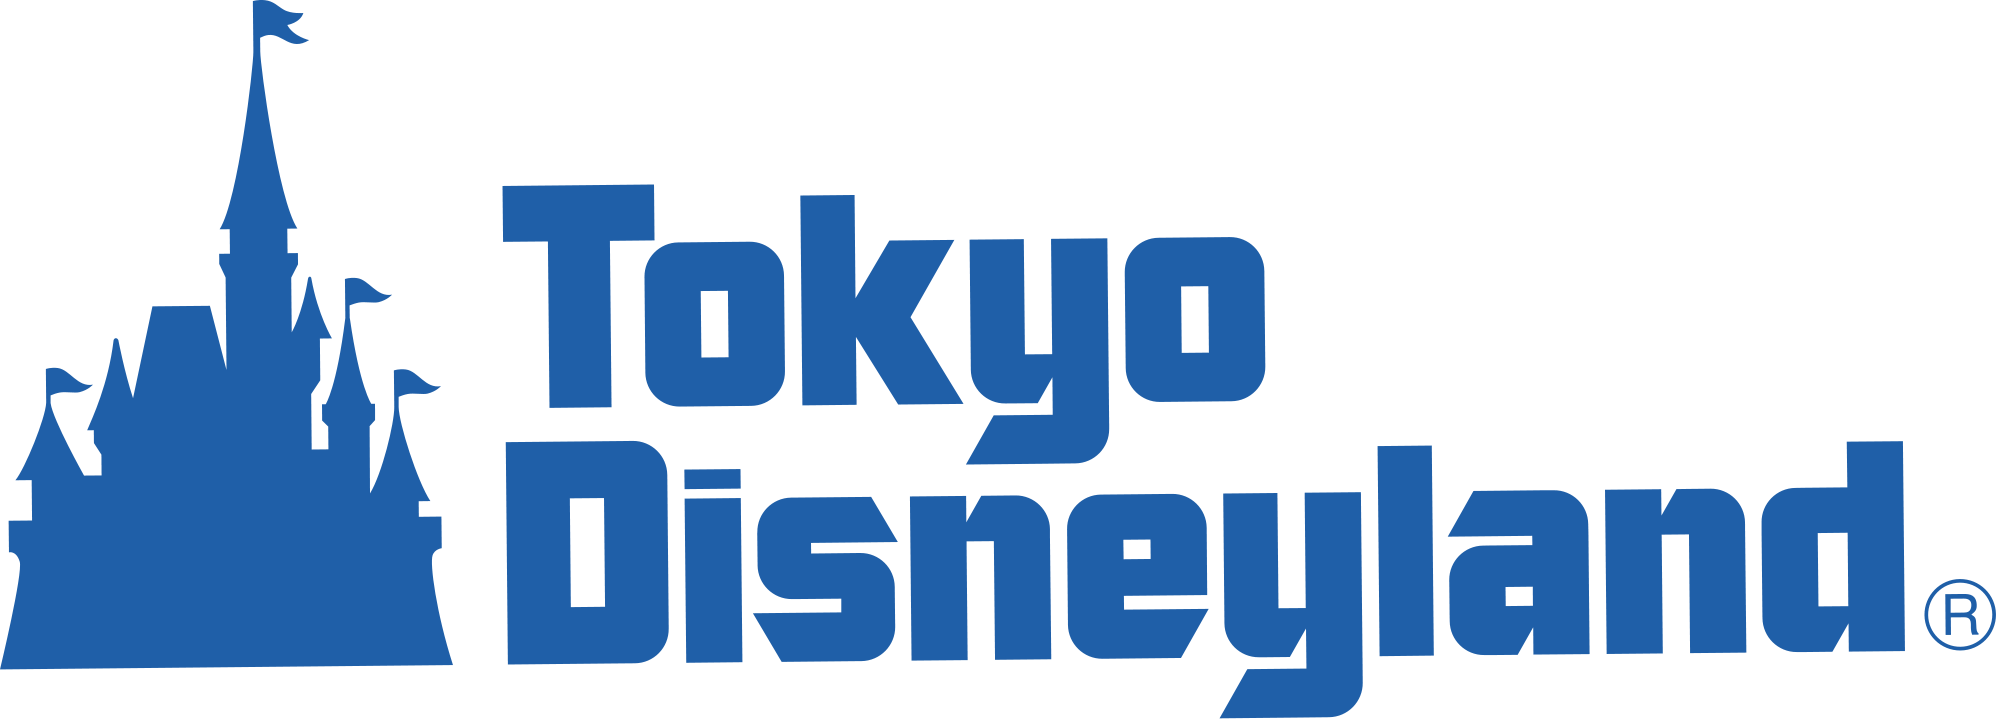 Walt Disney Resorts and Parks Logo - Tokyo Disneyland logo.png